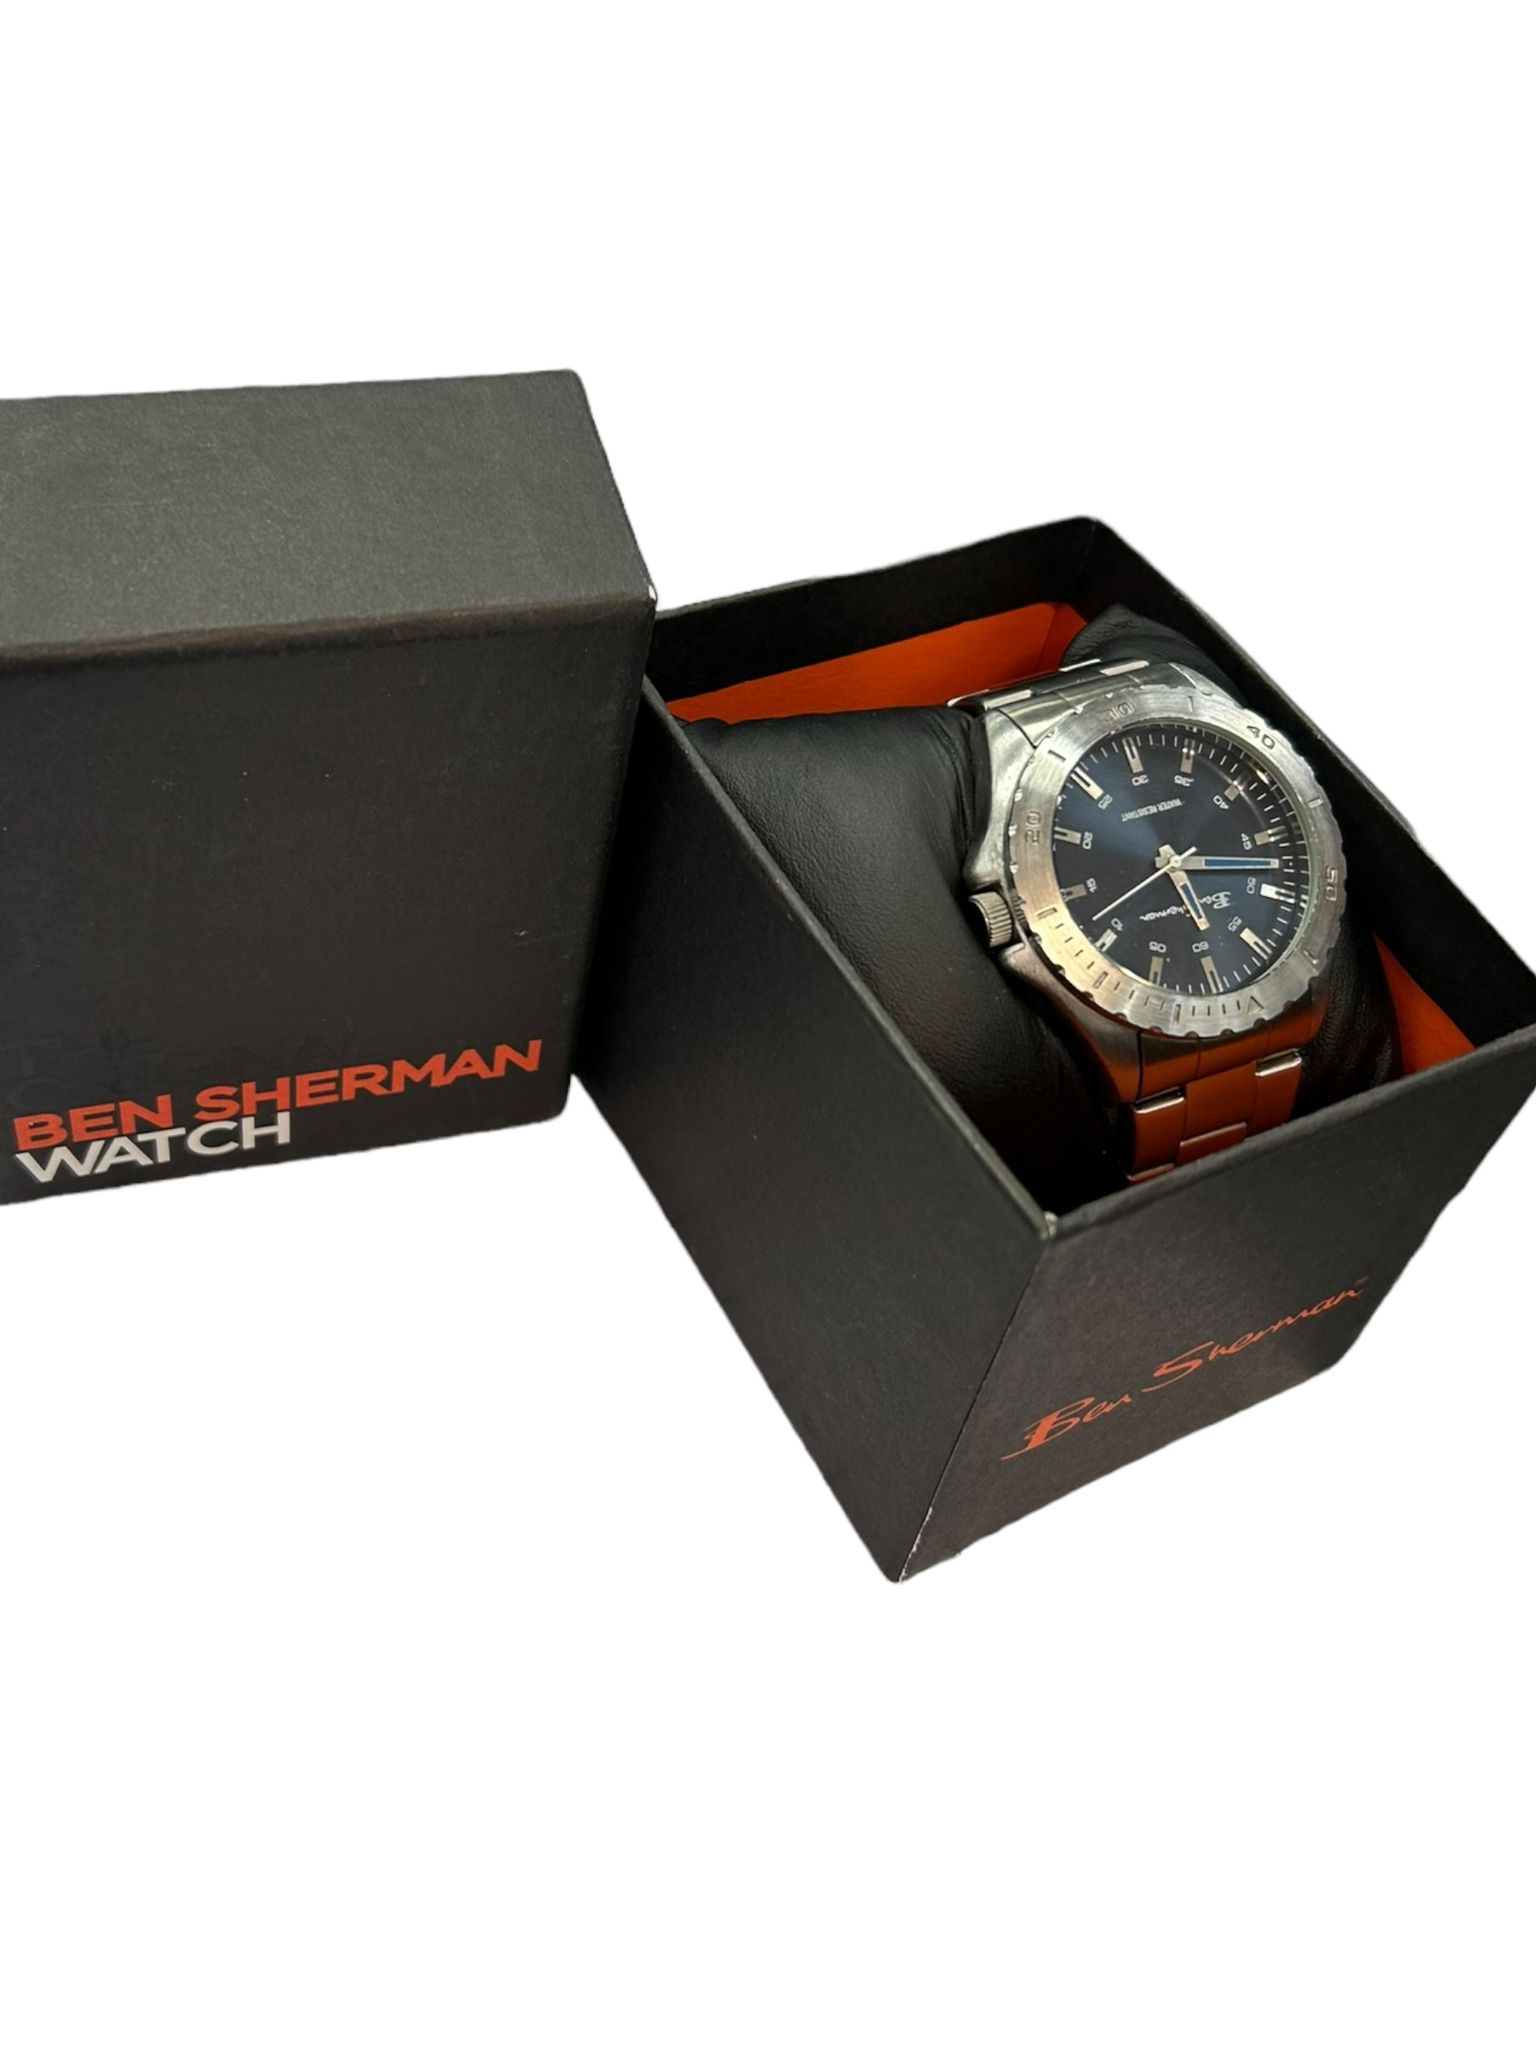 Ben Sherman Watch - Boxed 